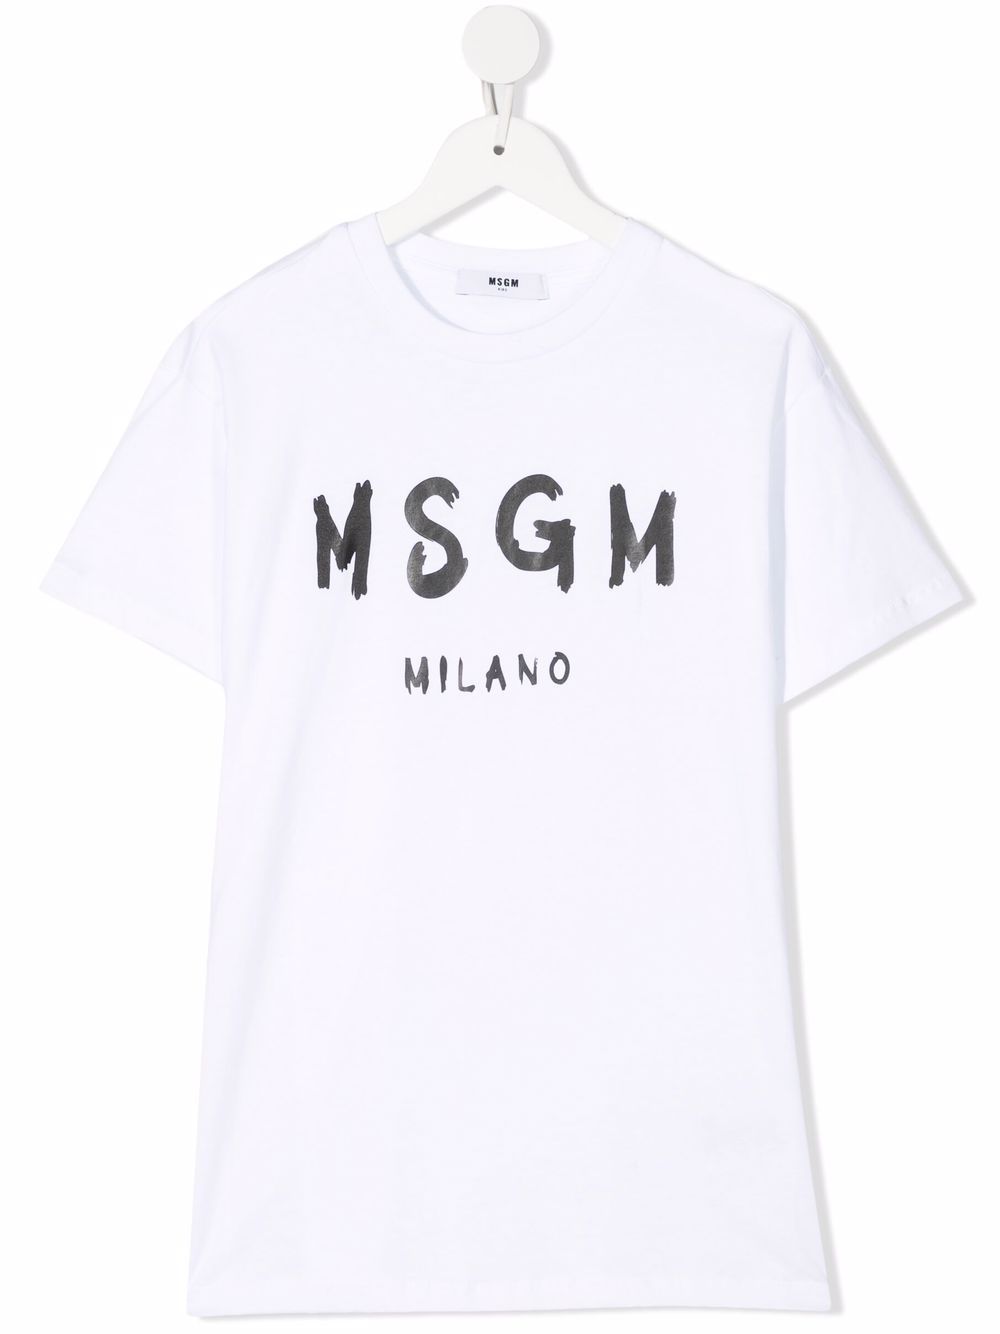 MSGM Kids logo-print cotton T-shirt dress - White von MSGM Kids